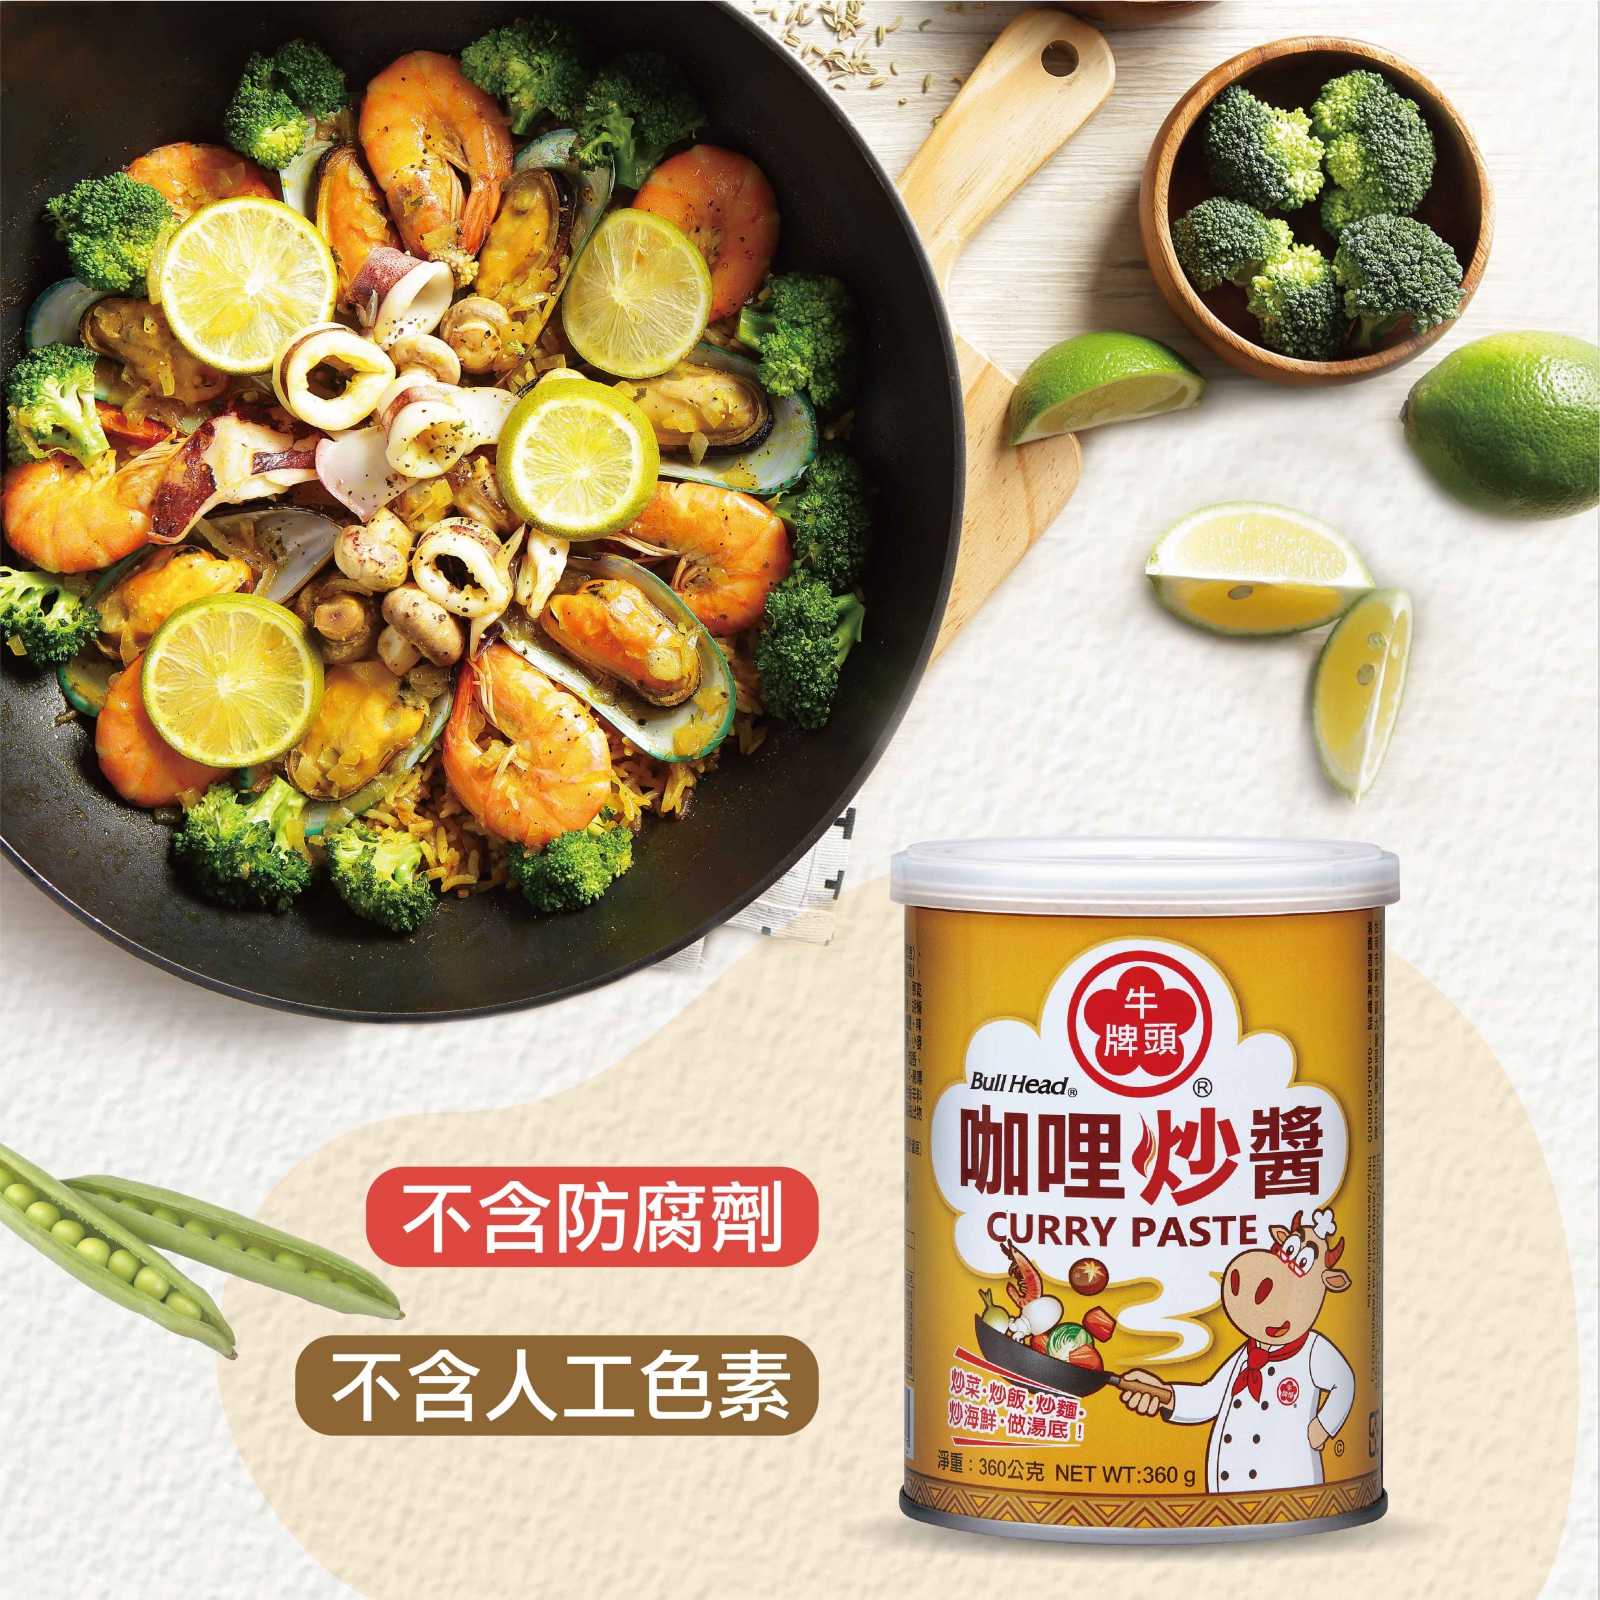 咖哩炒醬360g堅持不添加防腐劑、人工色素，可安心食用。